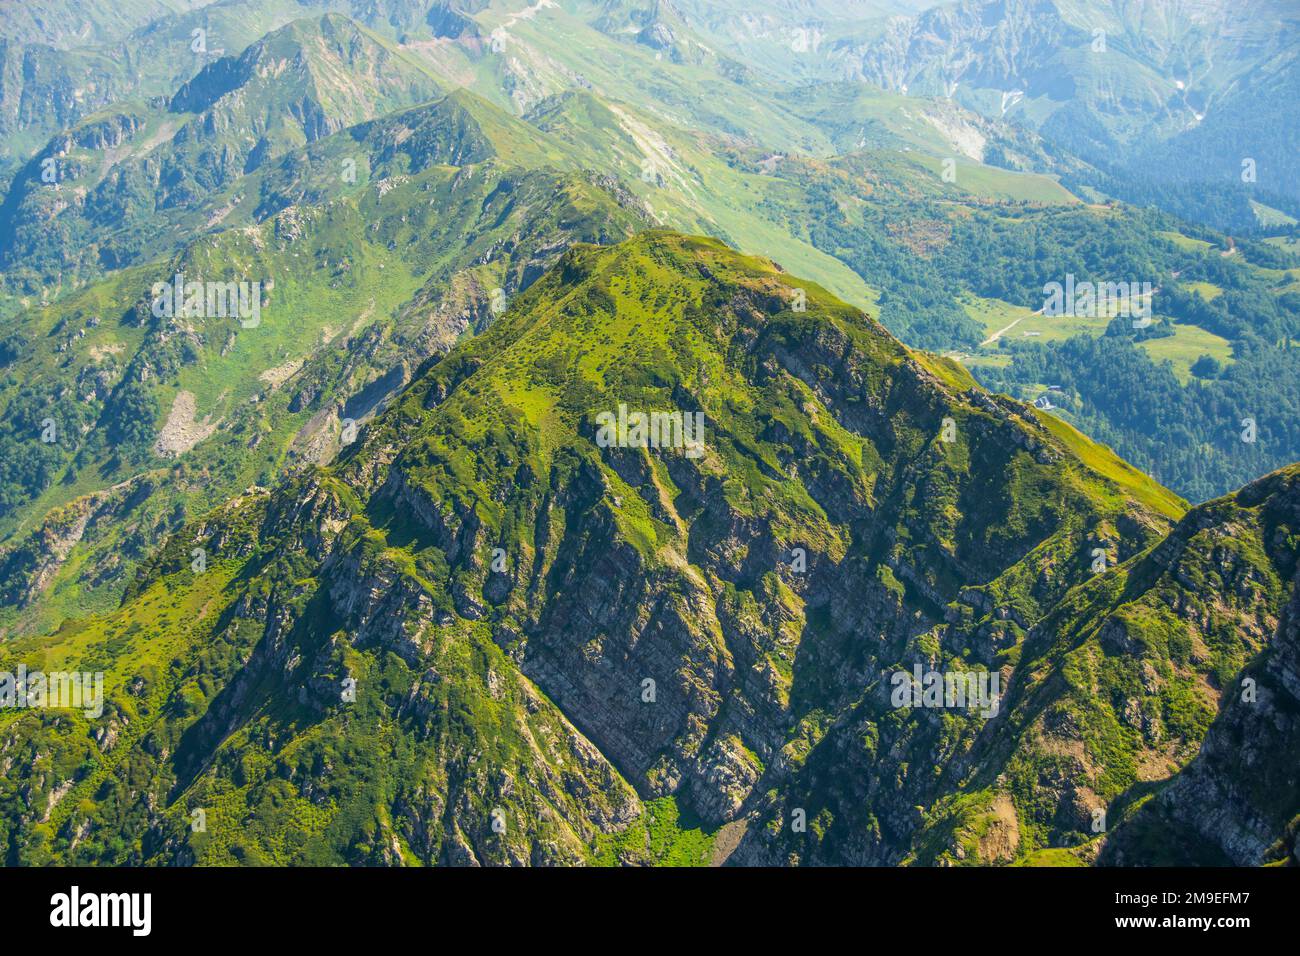 Vista desde una altura en las laderas de las montañas de la cresta del paso cubierta de vegetación, un hermoso paisaje natural Foto de stock